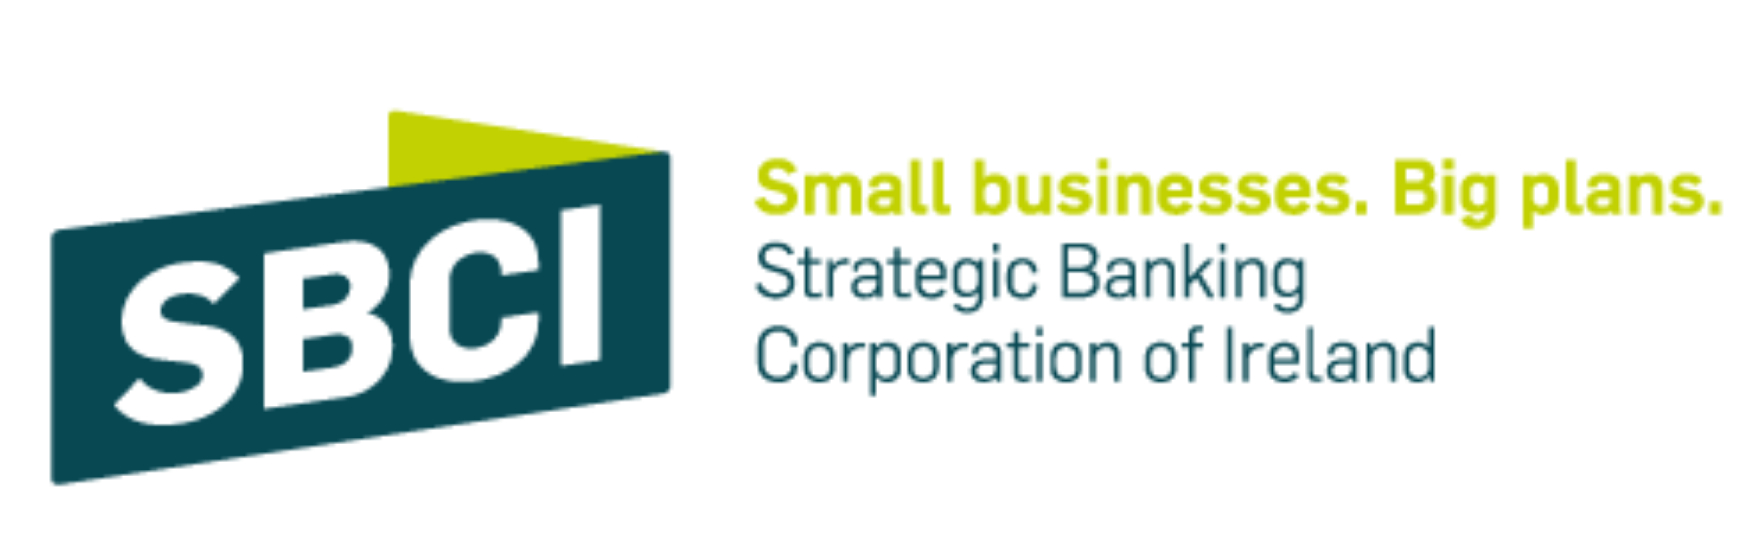 strategic banking corporation of ireland logo